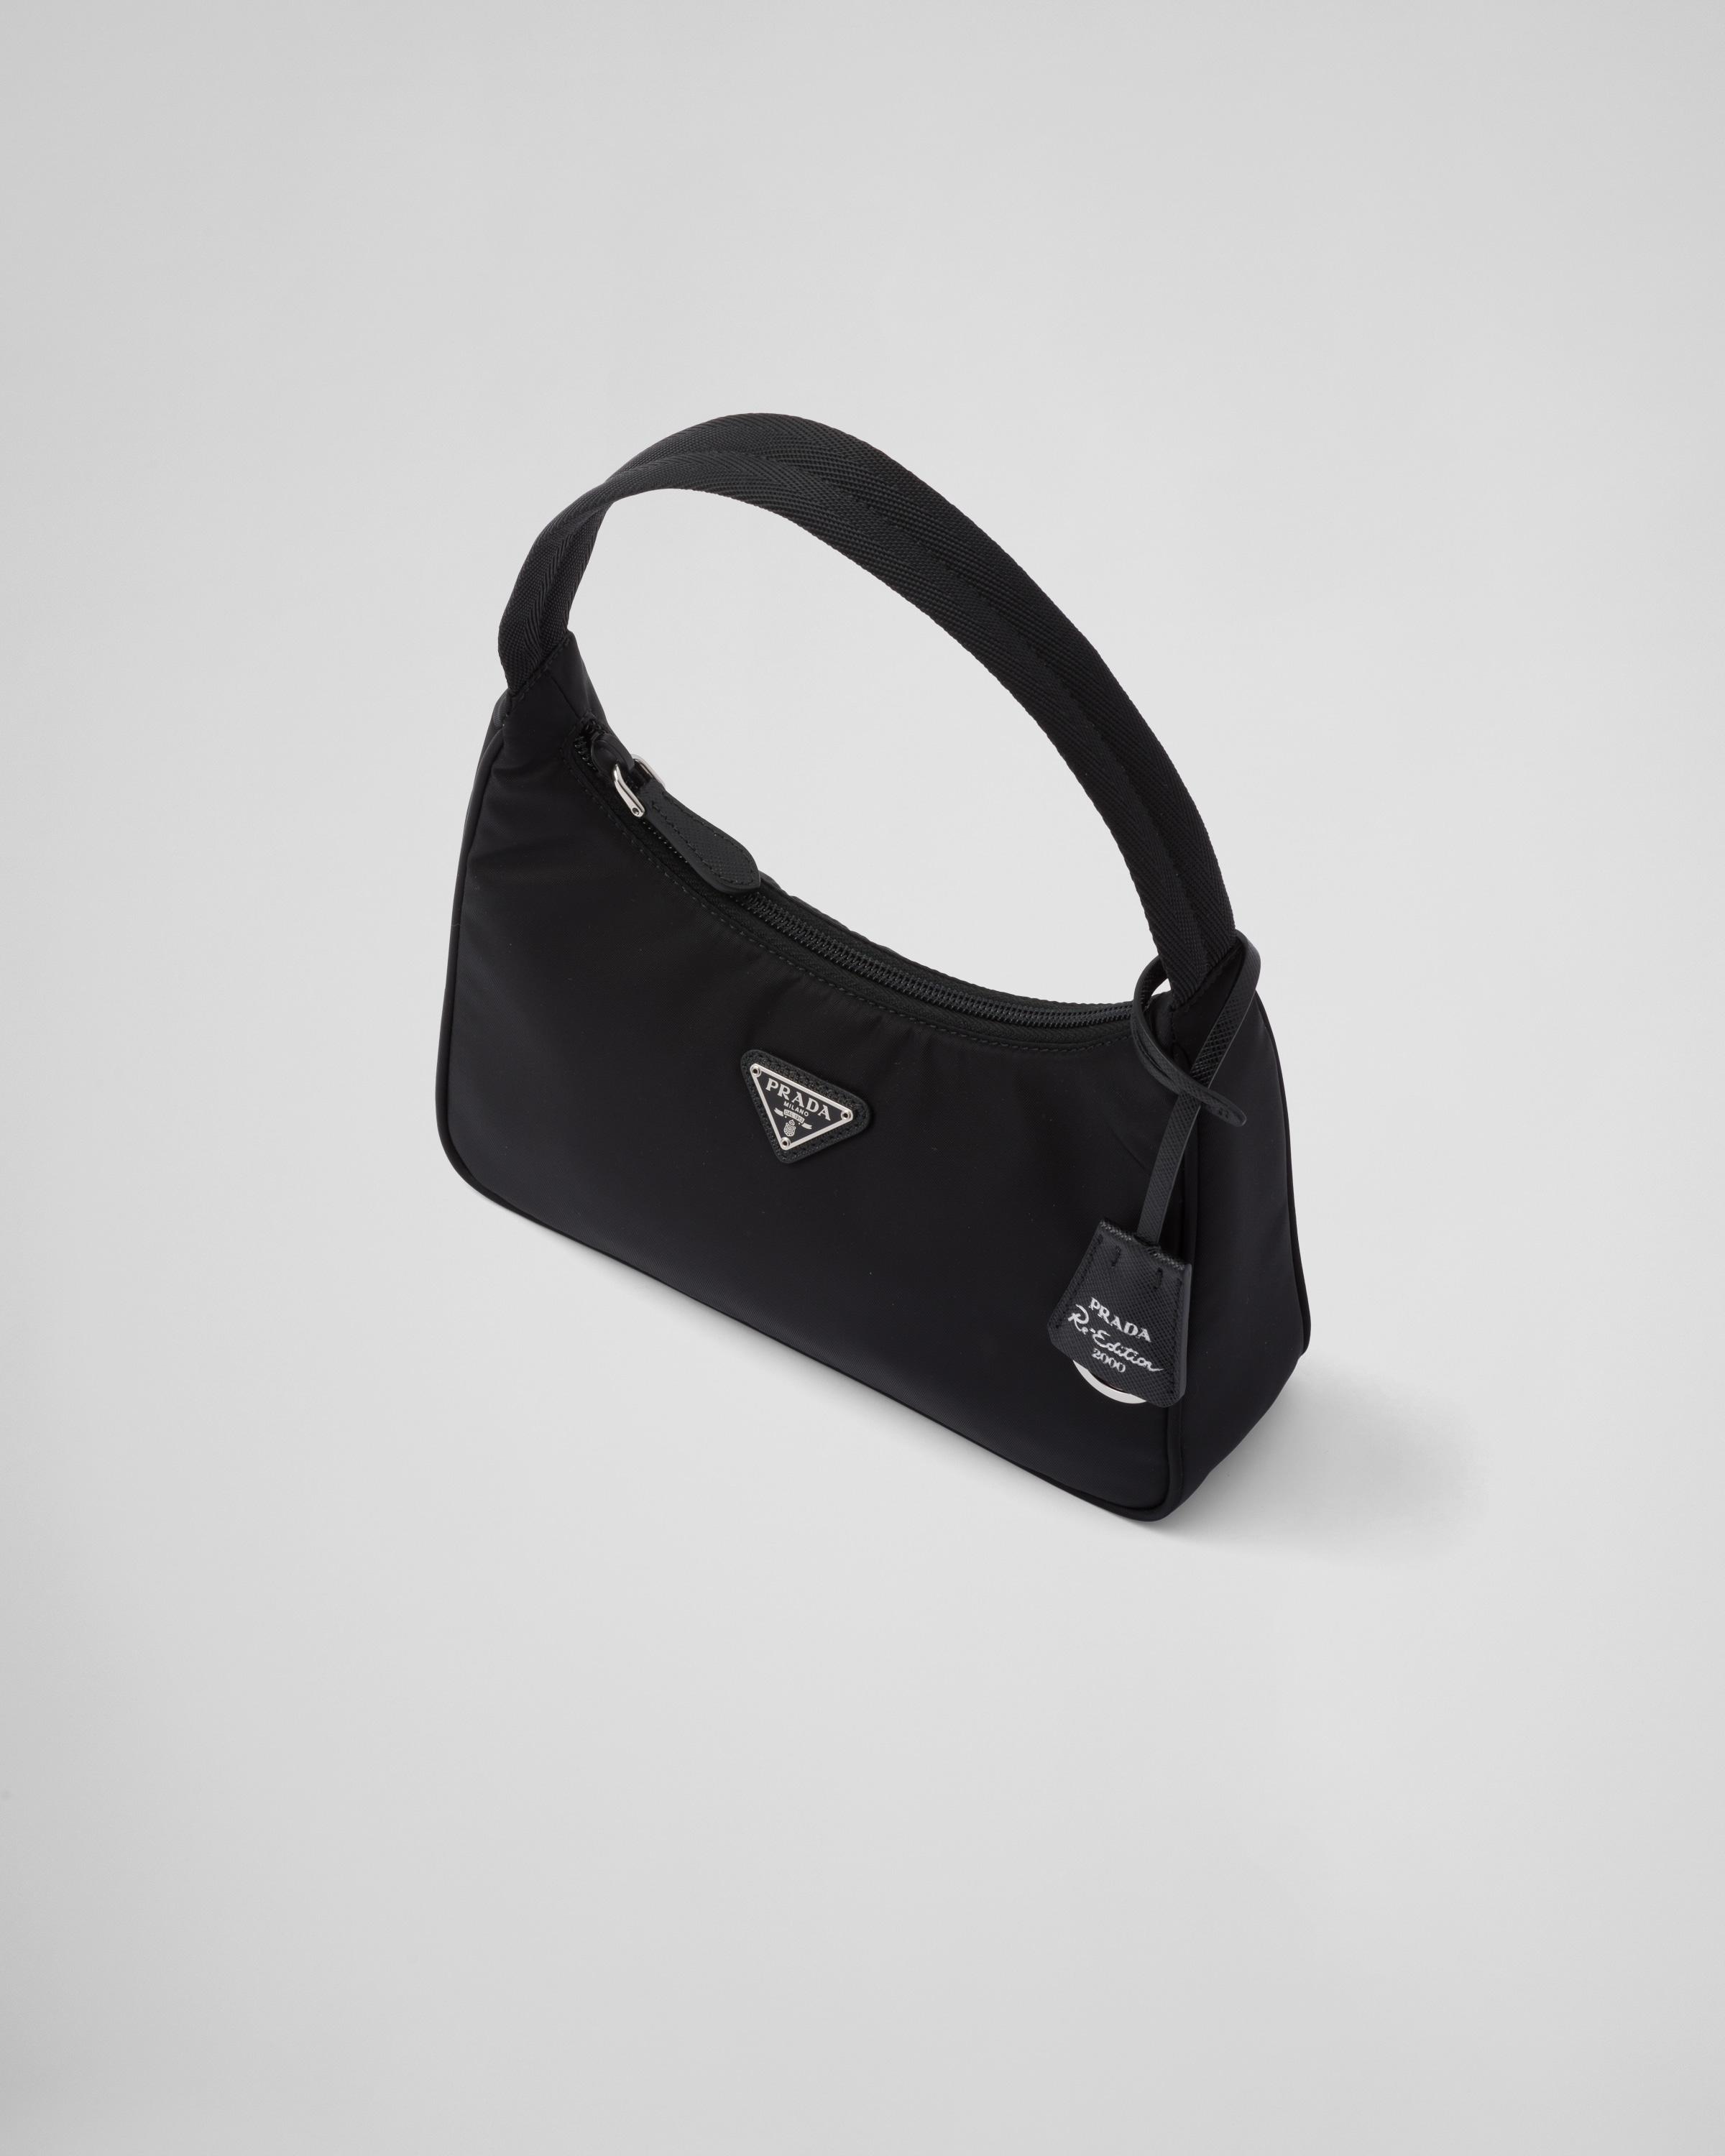 Prada Re-Edition 2000 Mini Bag Nylon Black in Nylon/Saffiano Leather with  Silver-tone - US